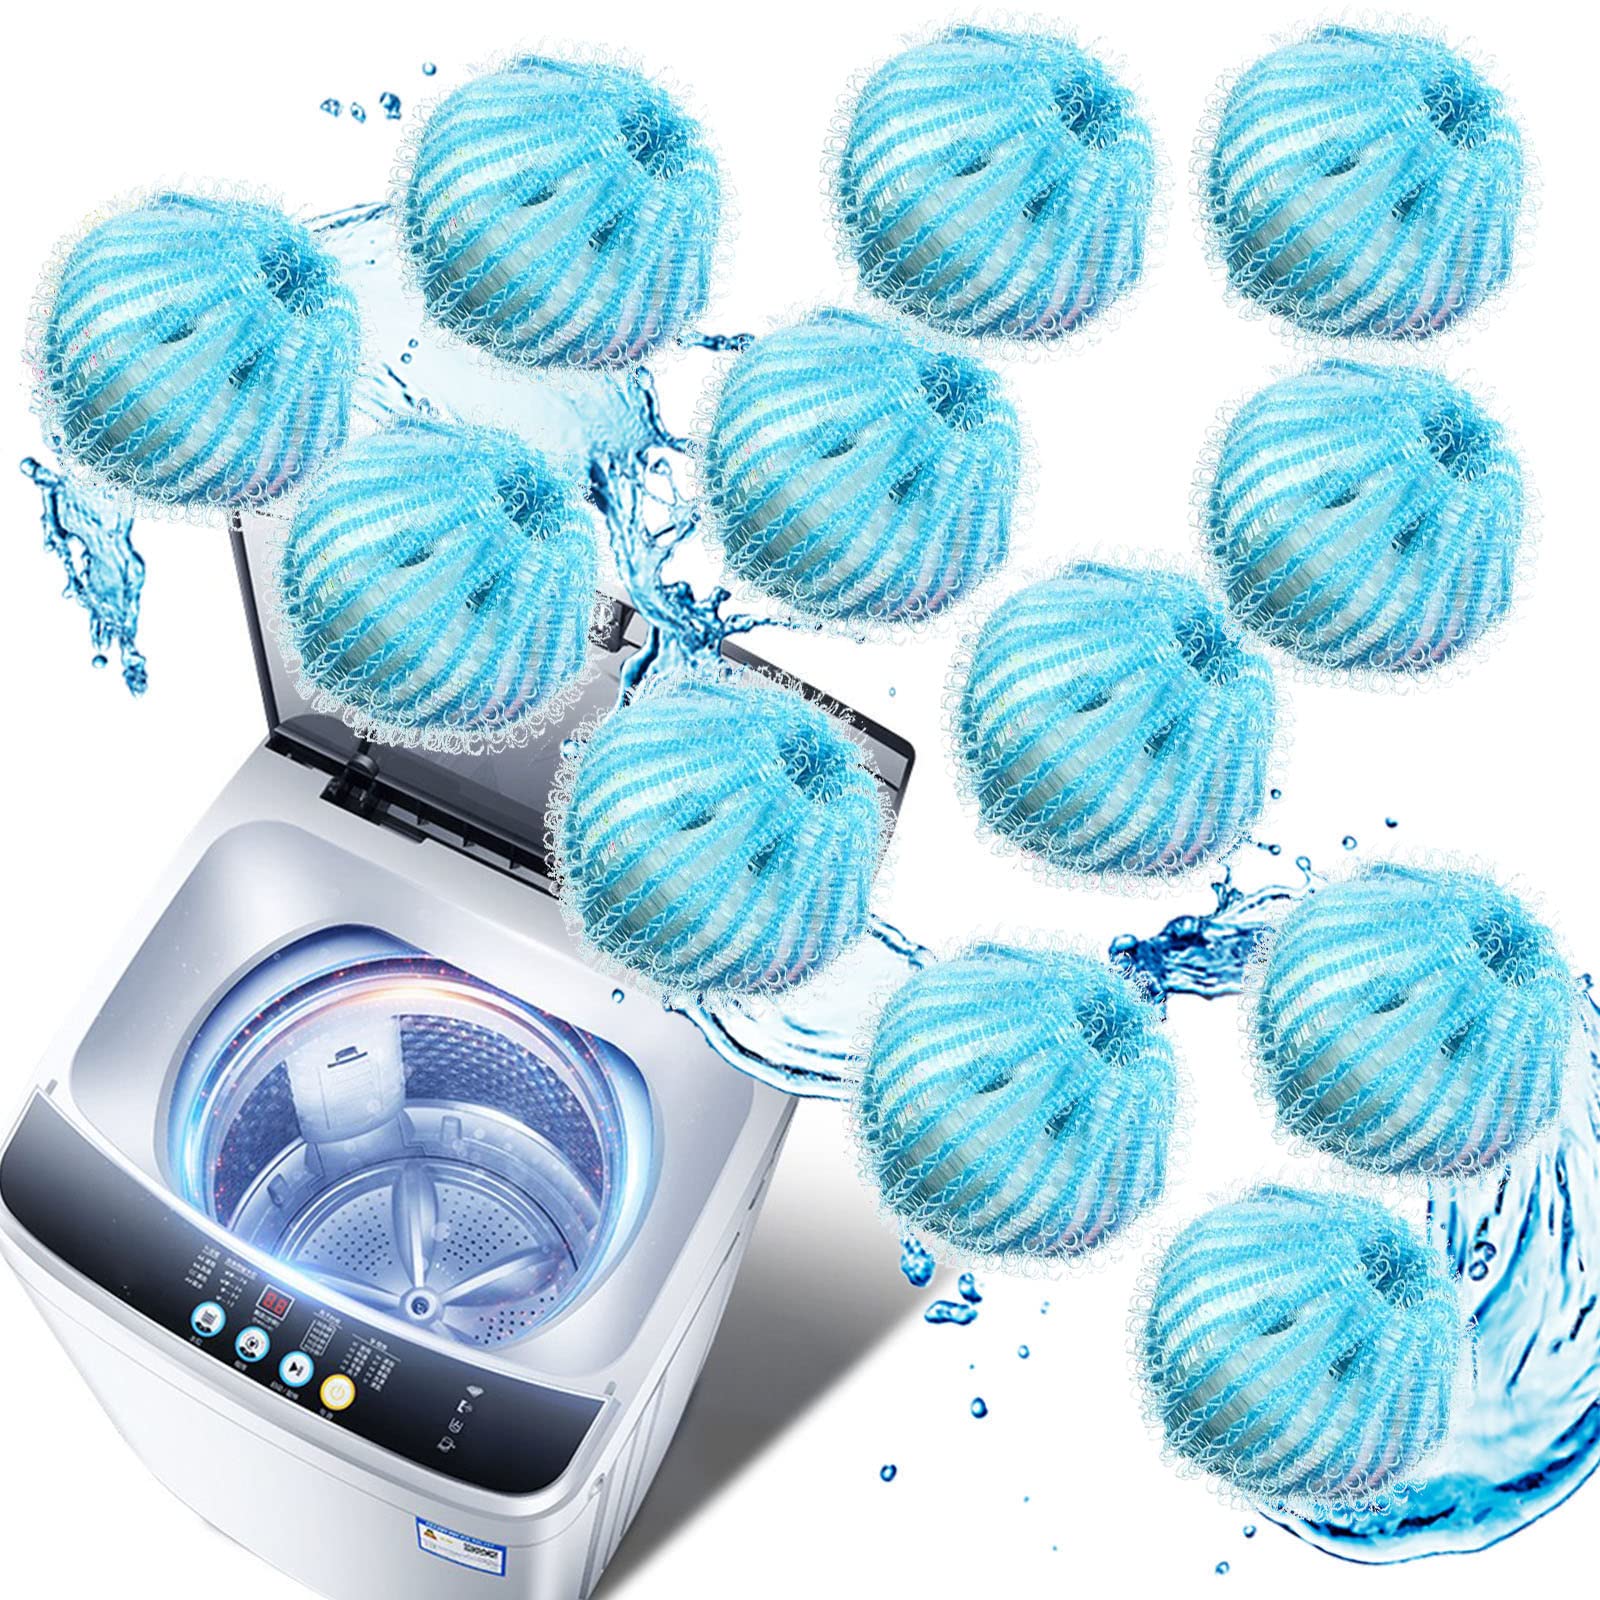 Best washing machine hair catcher Review 2020 